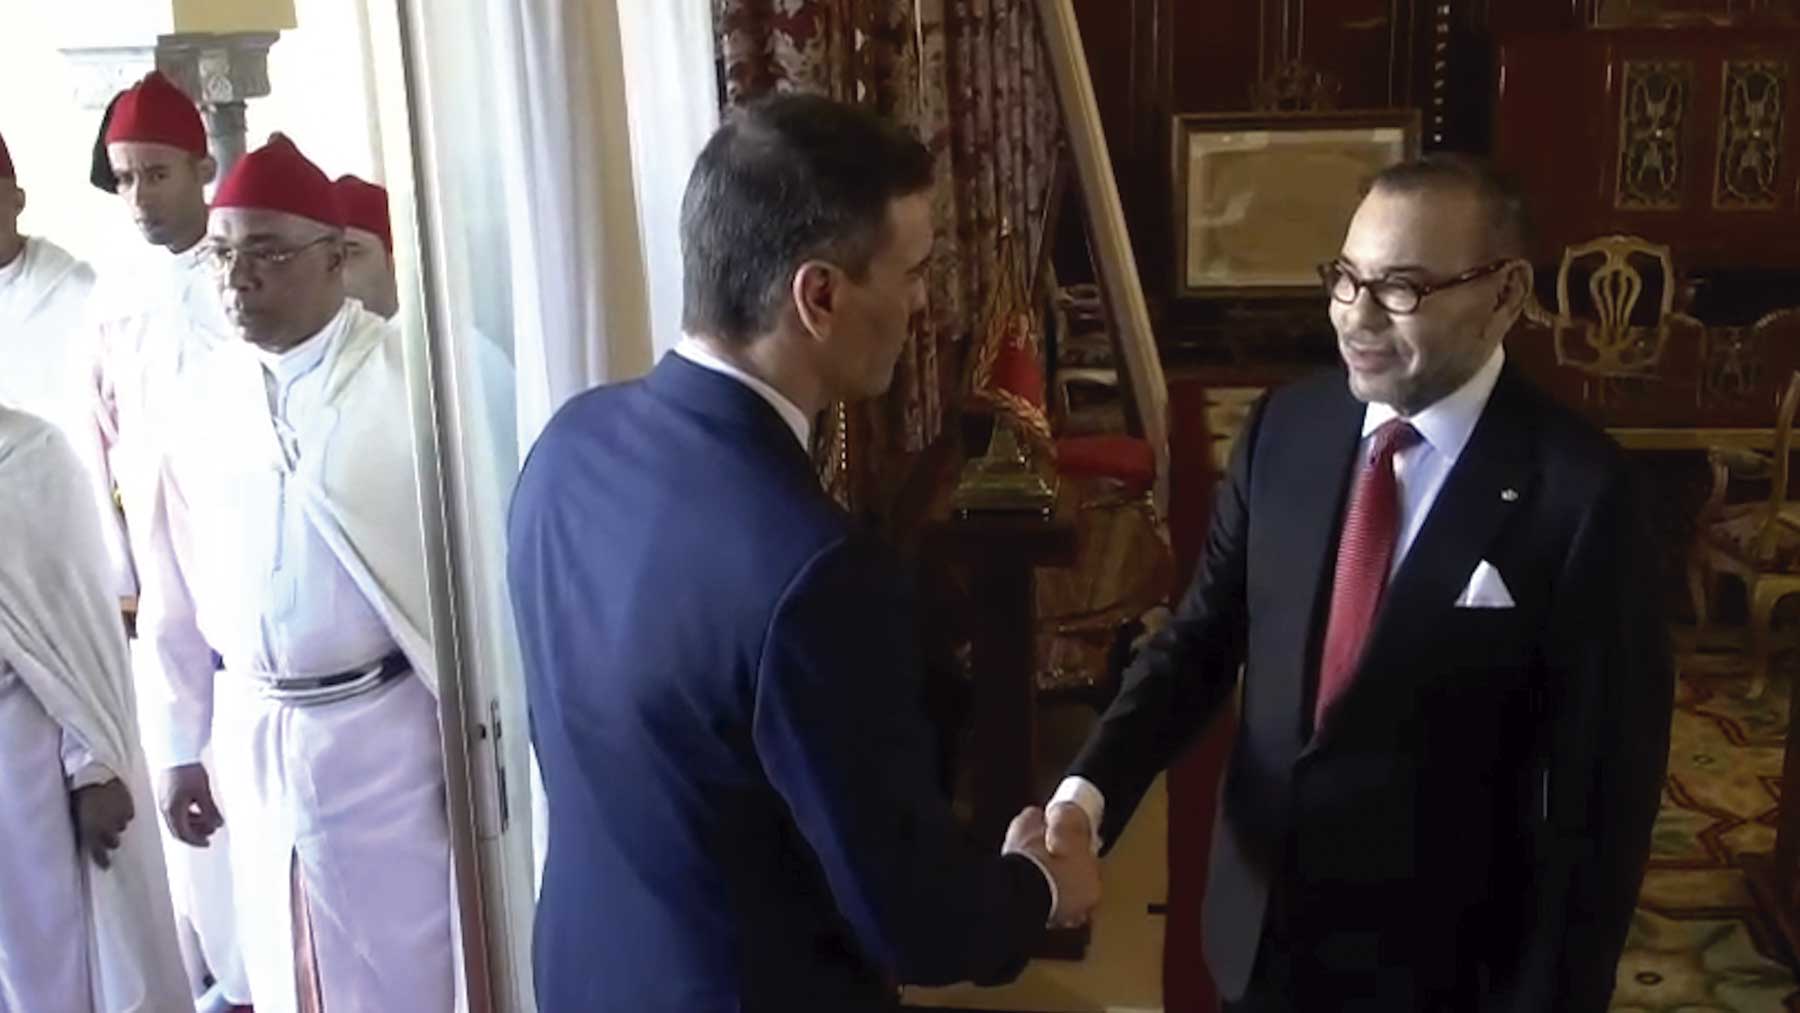 Pedro Sánchez saludando a Mohamed VI a su llegada al Palacio Real de Rabat.